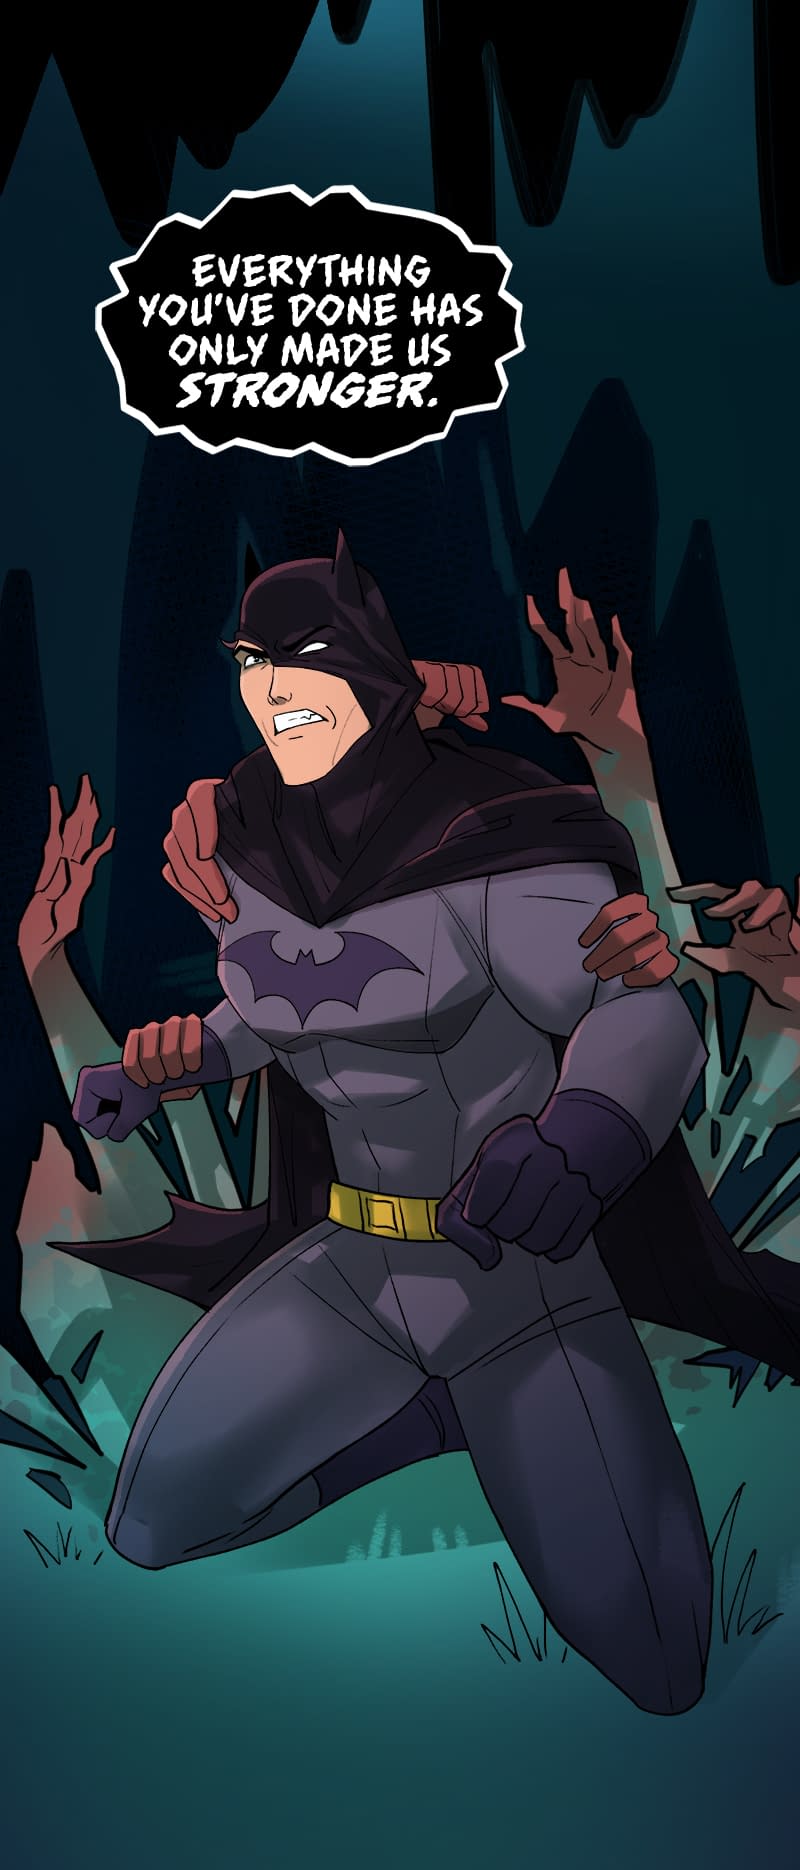 23 Февраля Бэтмен. Batman: Wayne Family Adventures Кассандра. 23 Февраля Бэтмен коллега. Открытка с Бэтманом на 23. Wayne family adventures